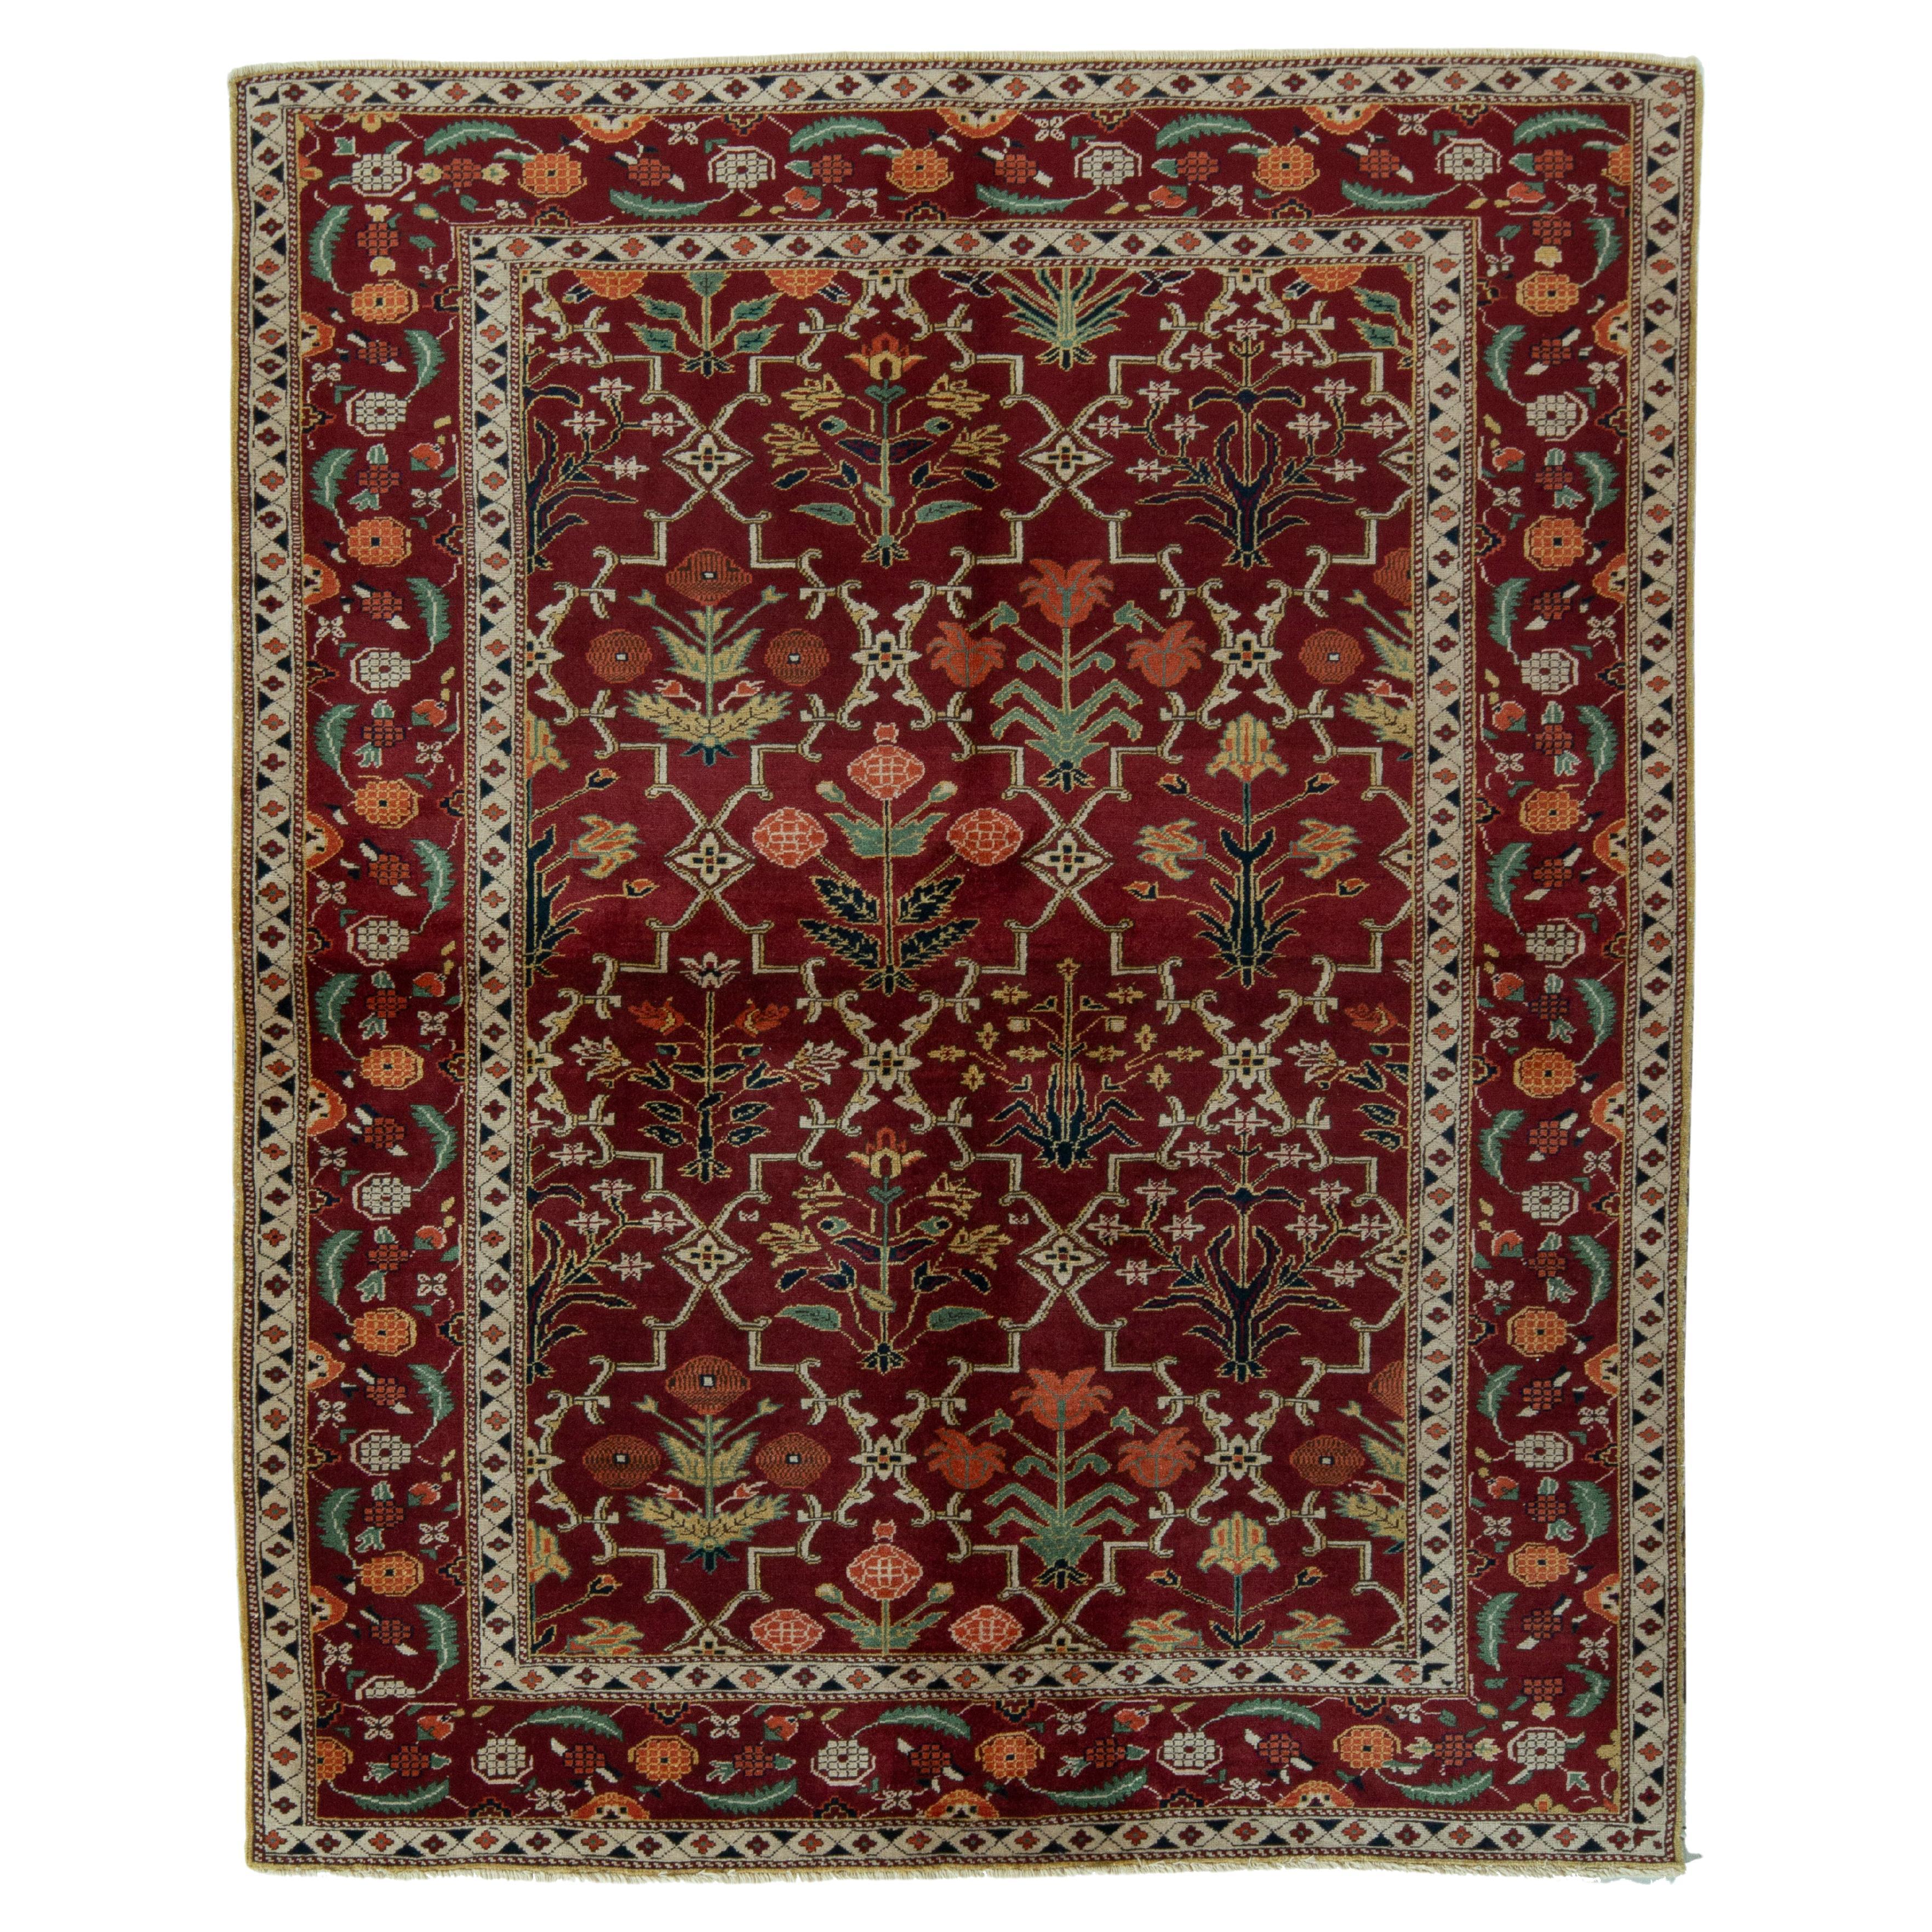 Teppich im Agra-Stil von Teppich & Kilims mit rotem, grünem Spalier-Blumenmuster